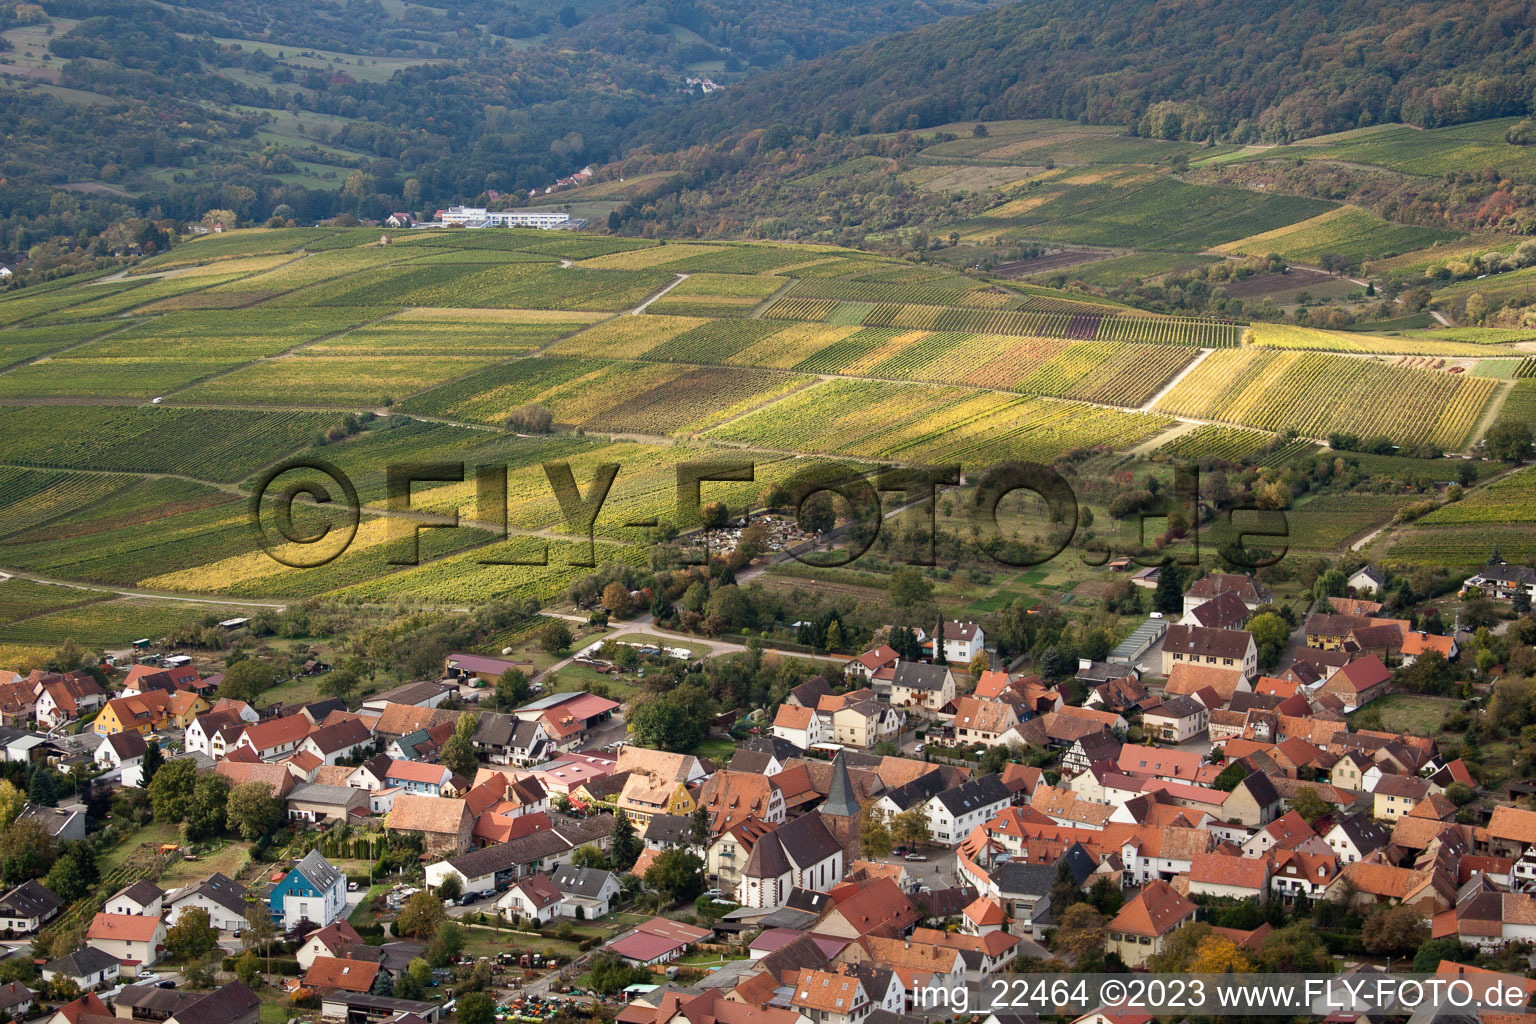 Aerial photograpy of District Rechtenbach in Schweigen-Rechtenbach in the state Rhineland-Palatinate, Germany